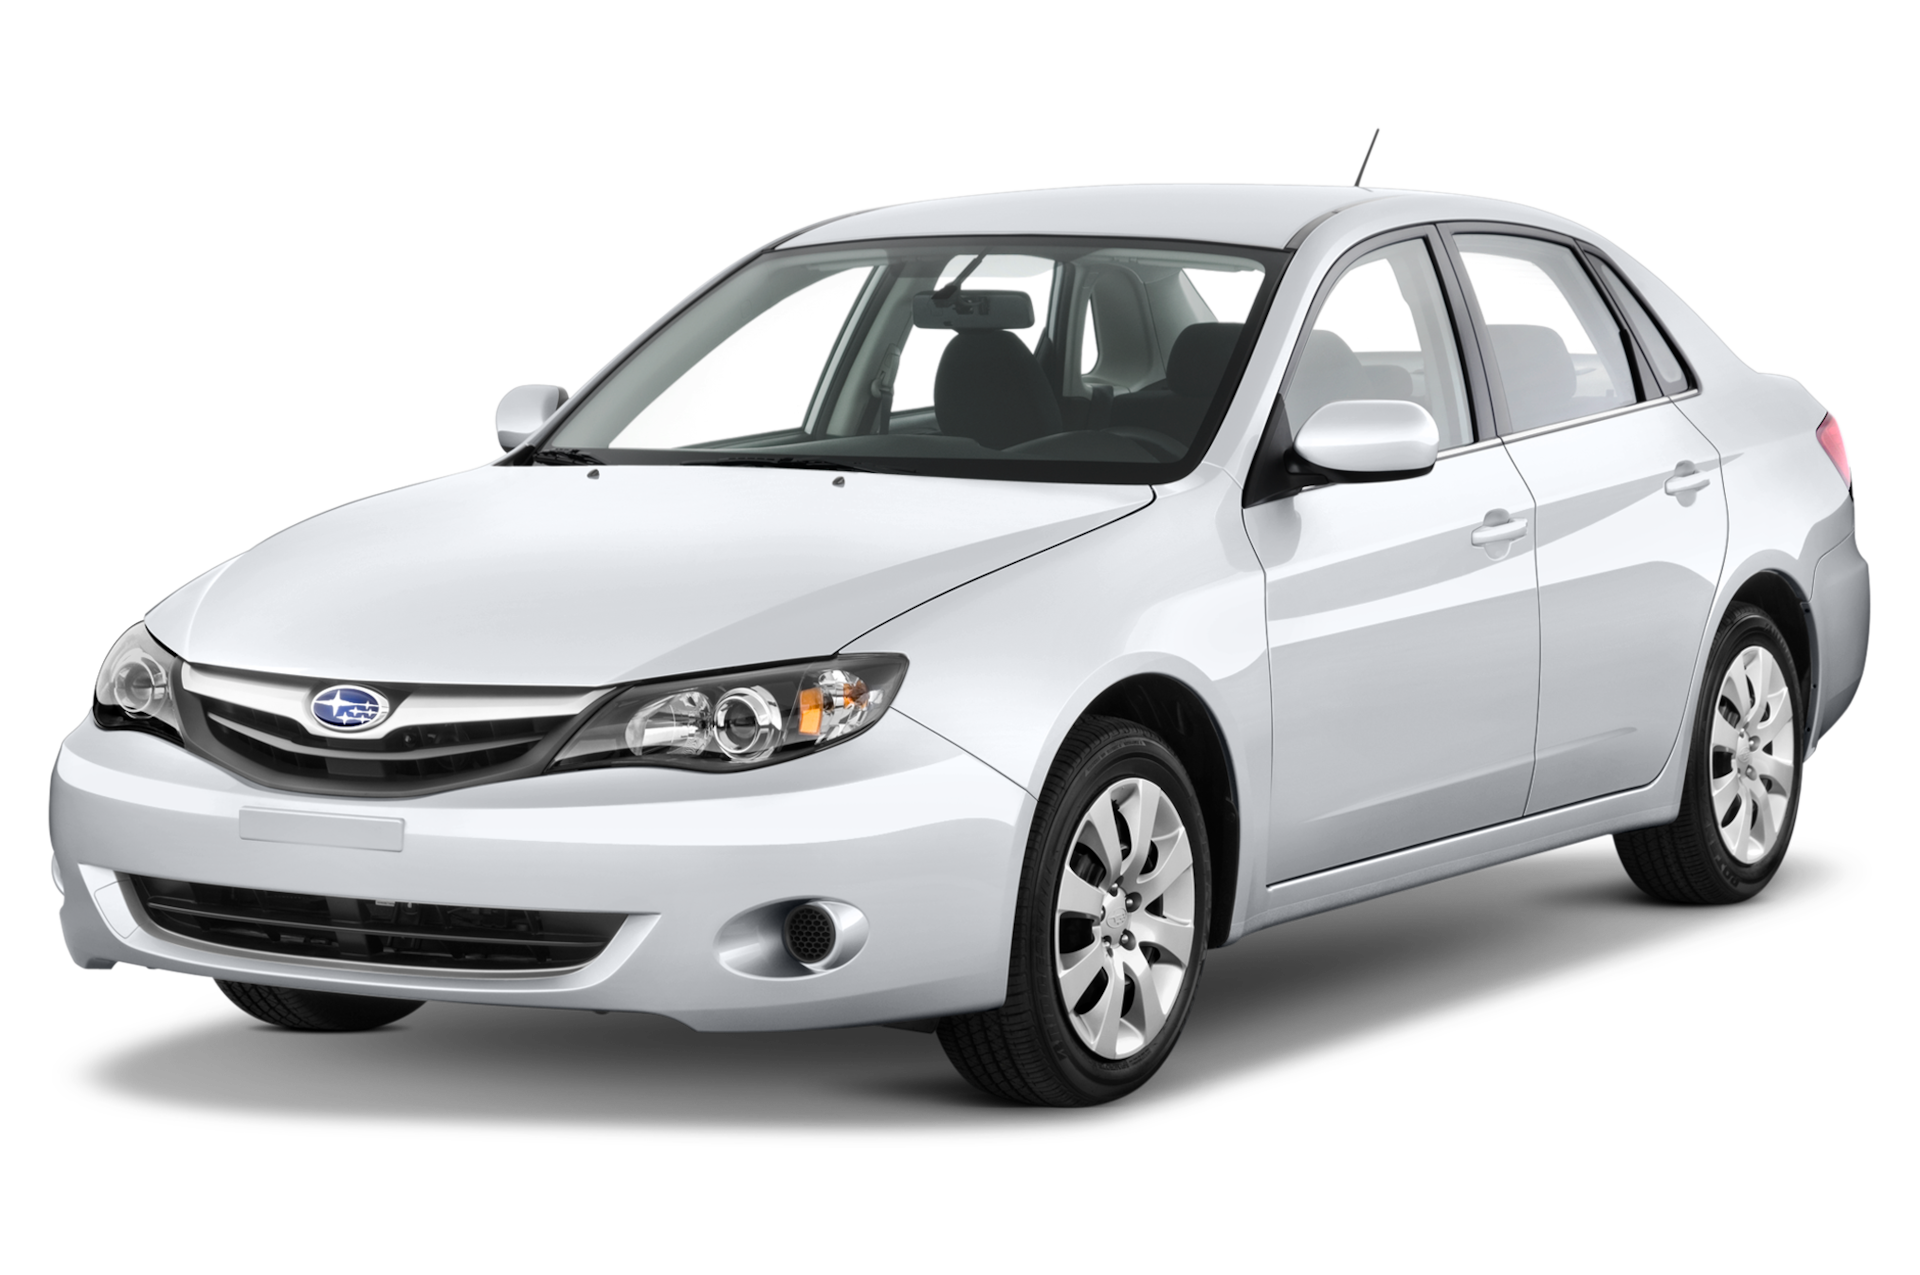 2010 Subaru Impreza Prices, Reviews, and Photos - MotorTrend